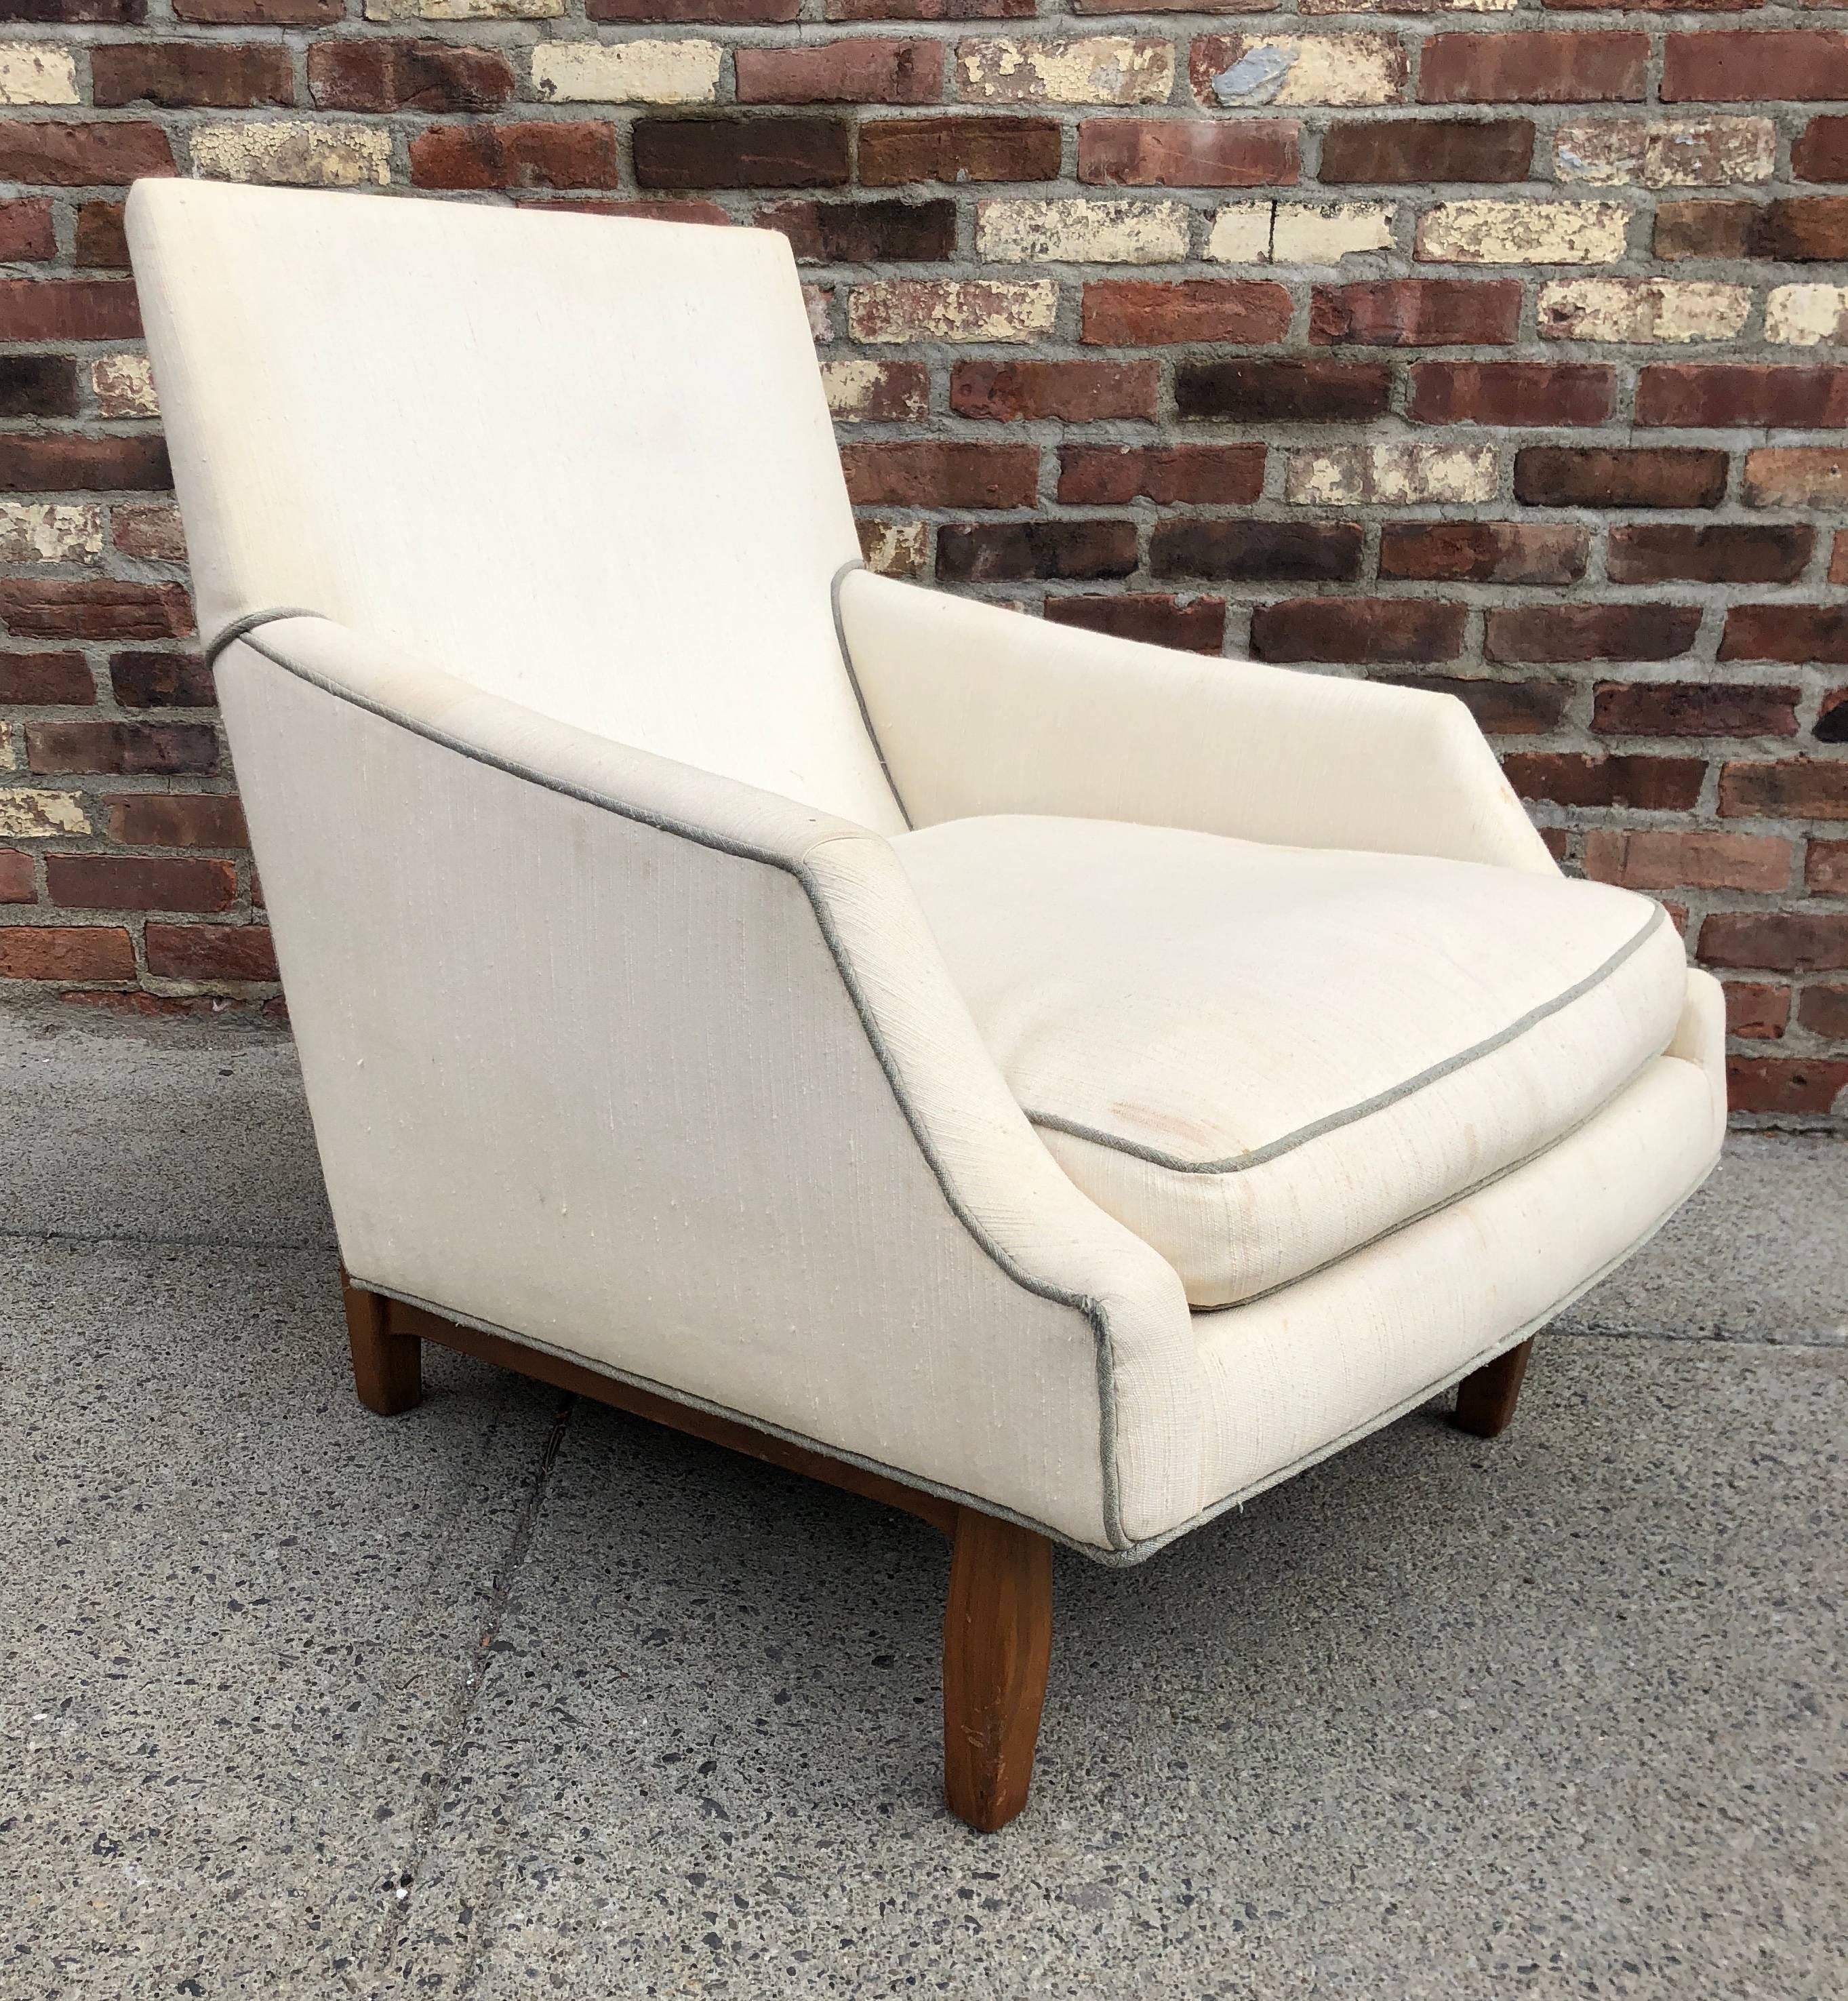 Loungesessel mit hoher Rückenlehne und scharf geschnittenem, abgewinkeltem Sitz auf geschnitzten Nussbaumbeinen, ca. 1950er Jahre. Unsigniert, wird aber Dunbar Furniture zugeschrieben.